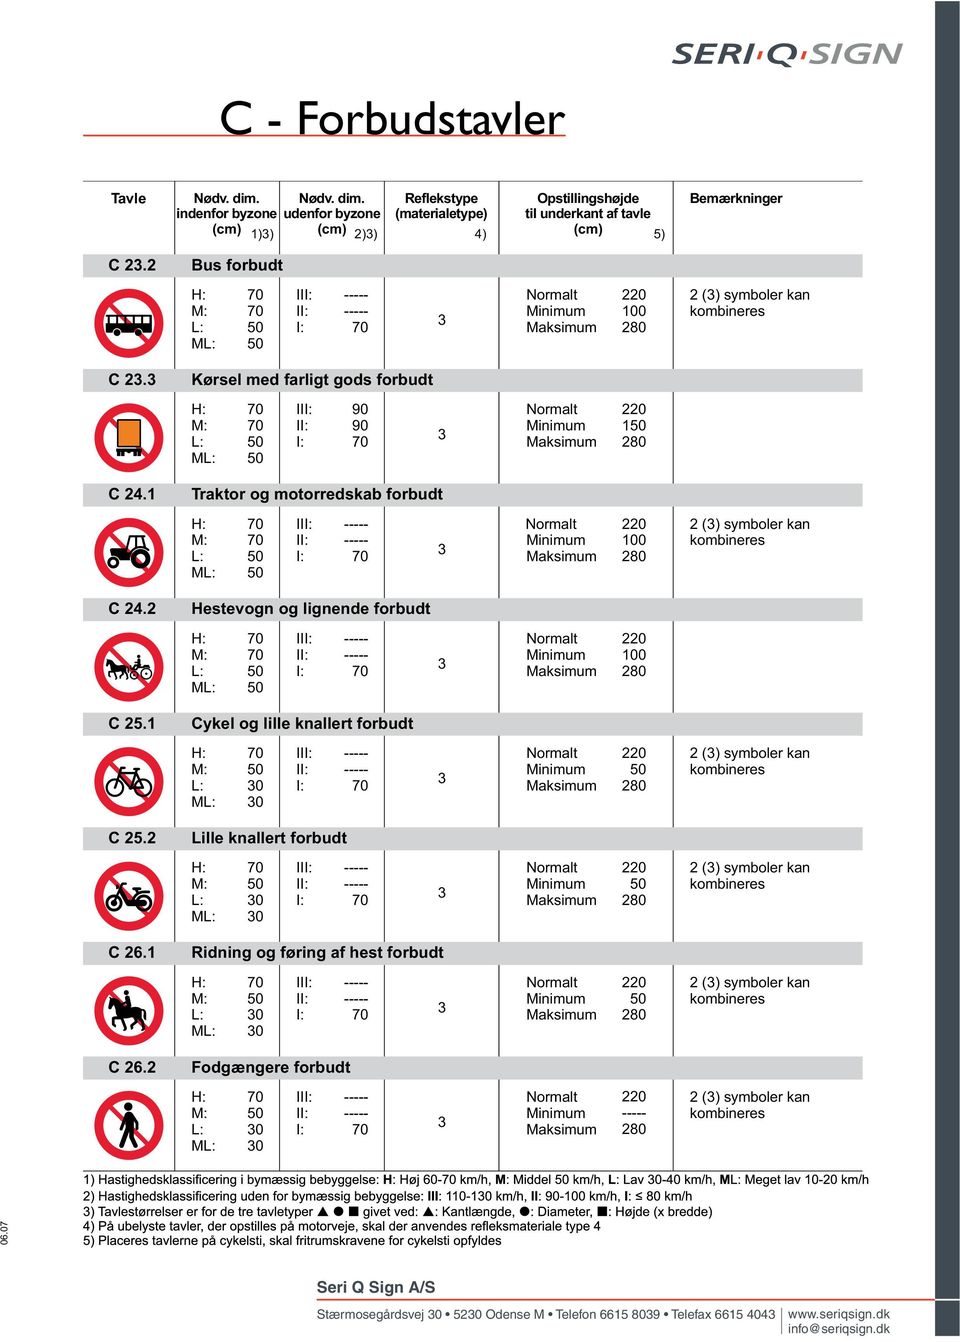 Kørsel med farligt gods forbudt M I 1 C 2.1 Traktor og motorredskab forbudt M I 100 2 () symboler kan kombineres C 2.2 Hestevogn og lignende forbudt M I 100 C 25.